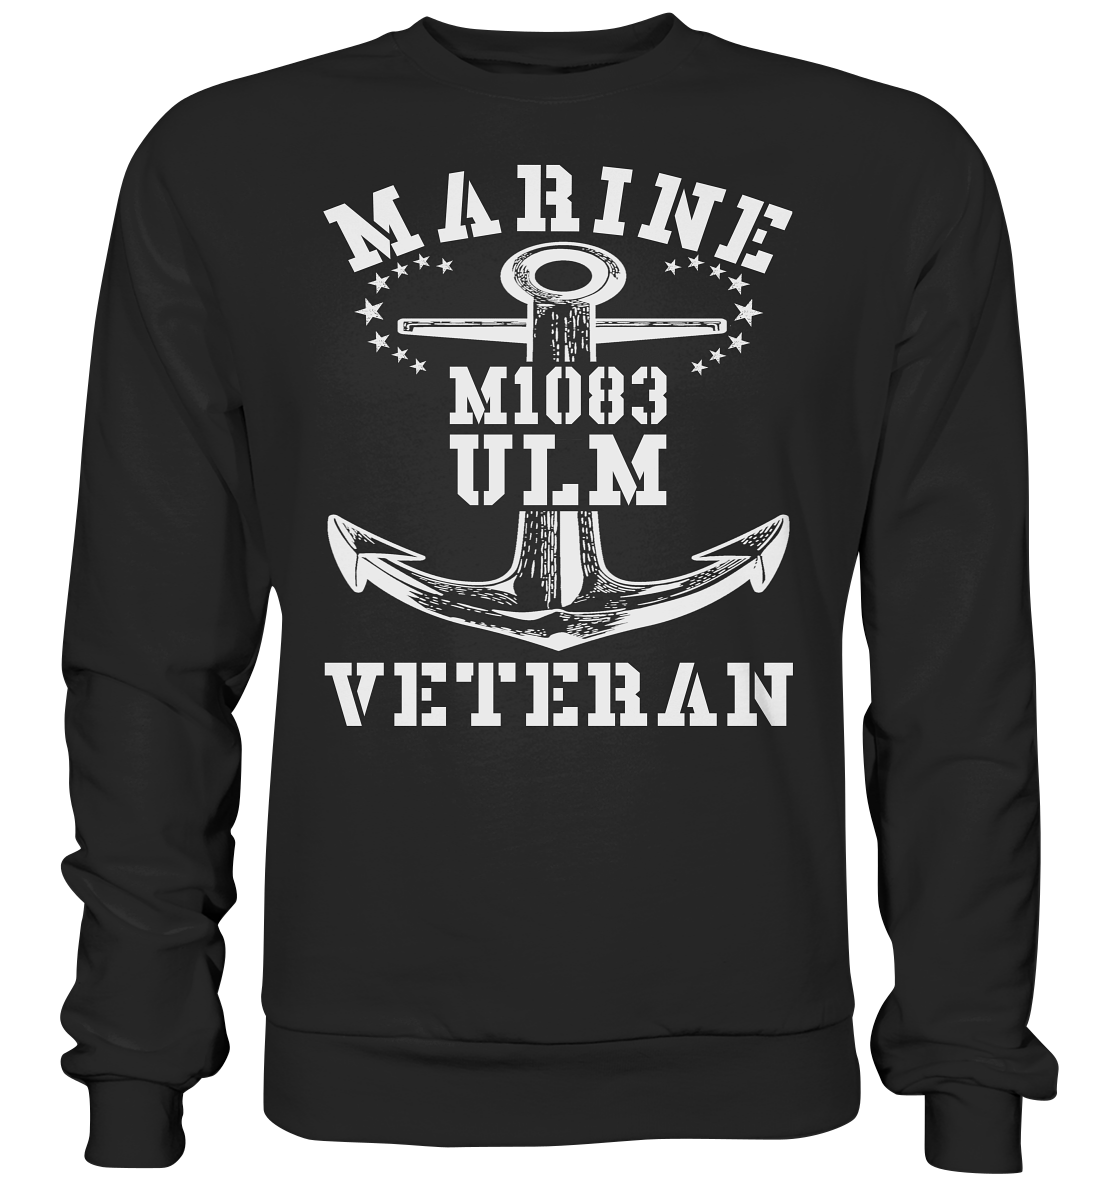 MARINE VETERAN M1083 ULM - Premium Sweatshirt